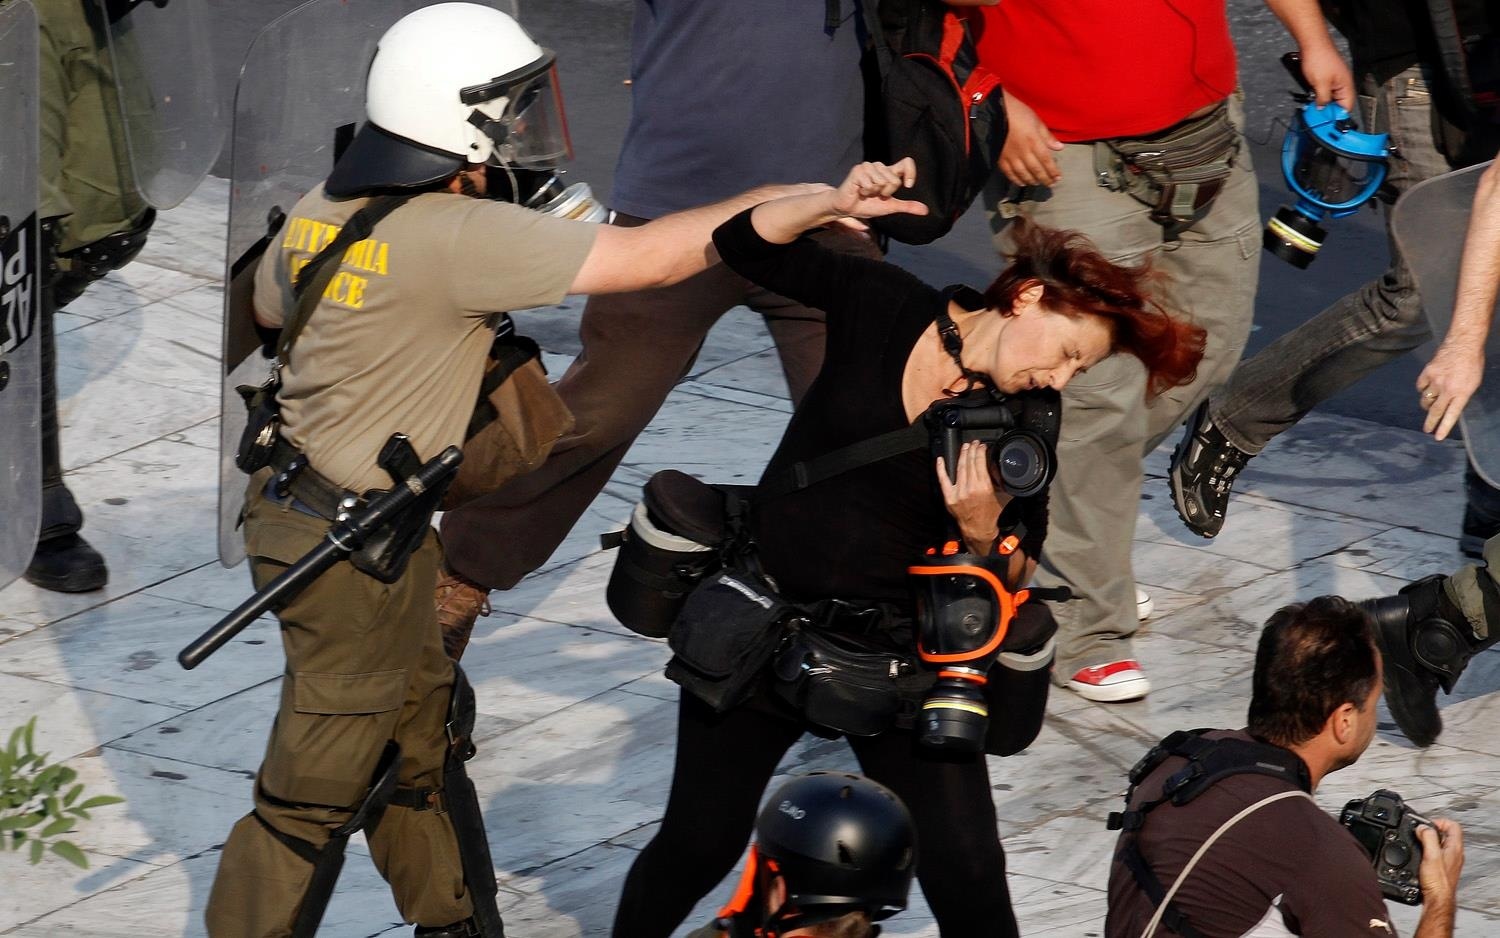 Η Τατιάνα Μπόλαρη είναι μία από τις φωτορεπόρτερ που δέχθηκε επίθεση από τα ΜΑΤ